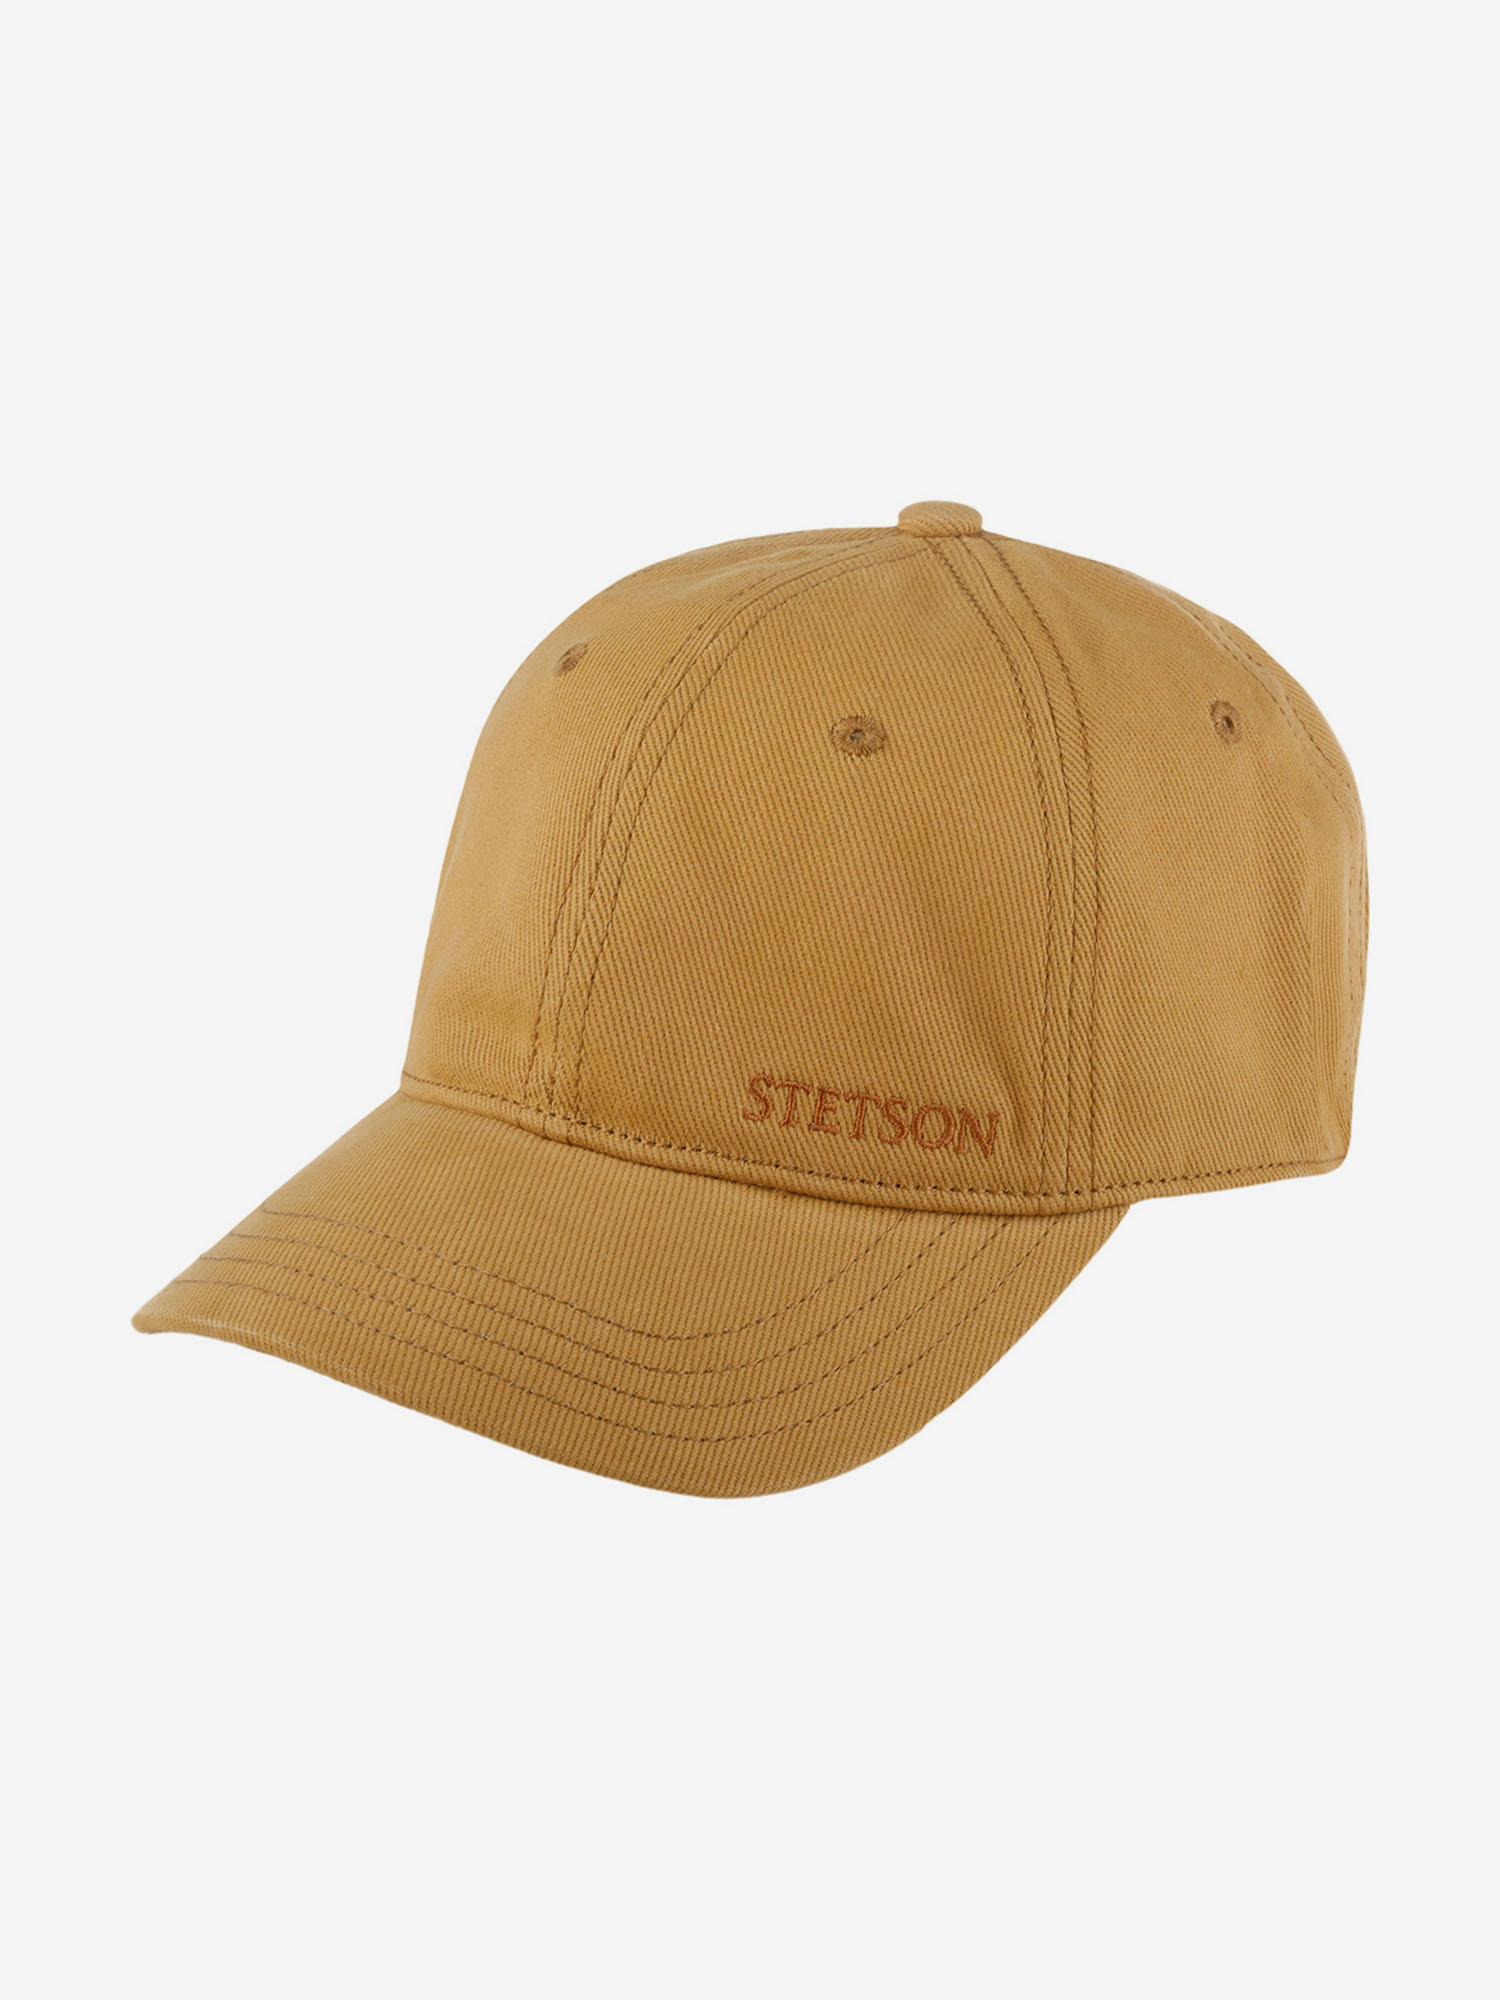 Бейсболка STETSON 7711142 BASEBALL CAP BRUSHED TWILL (коричневый), Коричневый